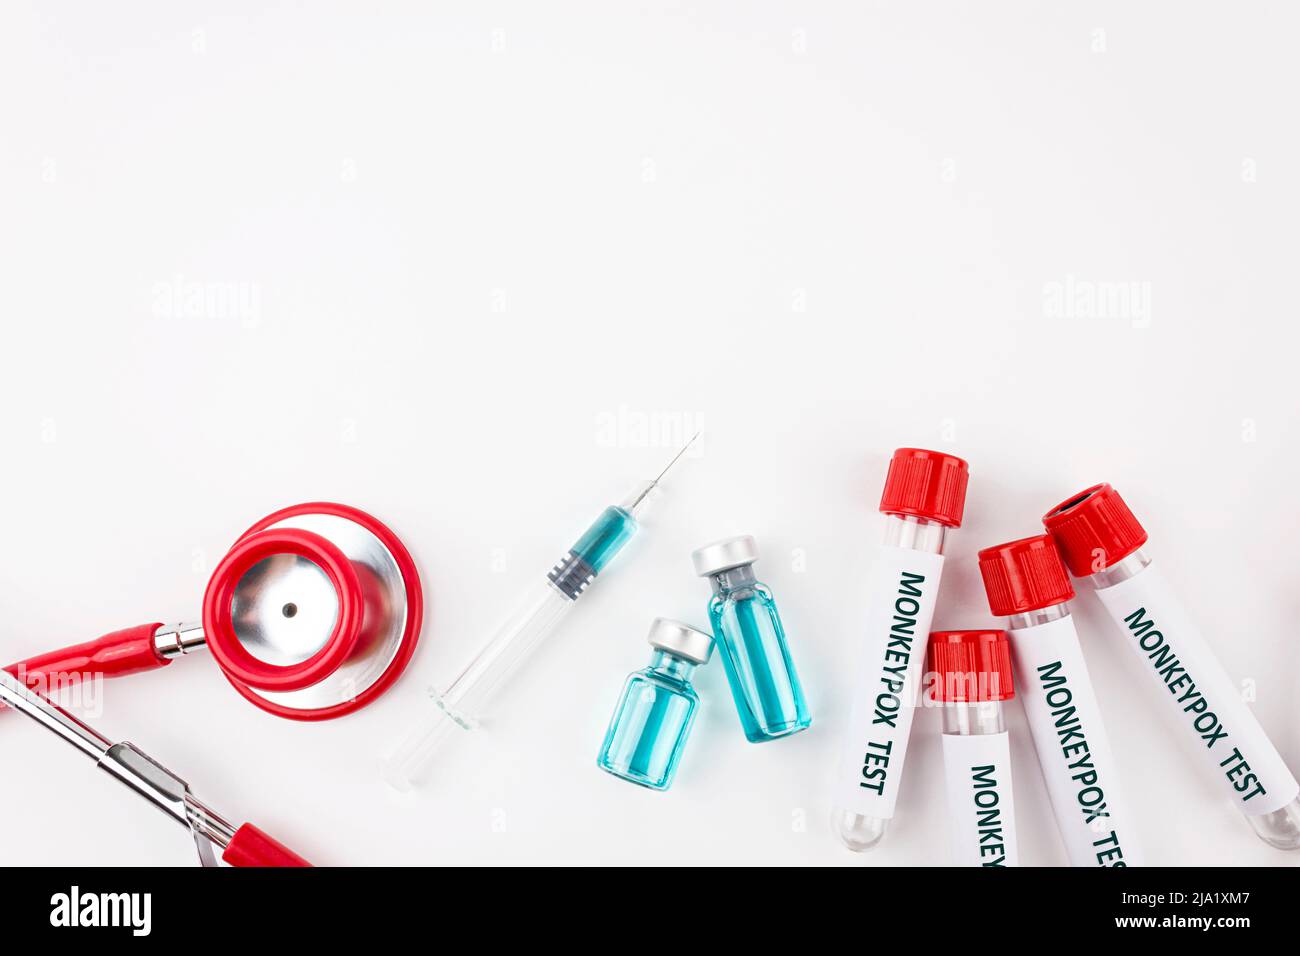 Blutprobenschlauch für Monkeypox-Virustest, Stethoskop und Spritze mit Impfstoffform Pocken auf weißem Hintergrund. Medizinisches Konzept. Draufsicht. Stockfoto